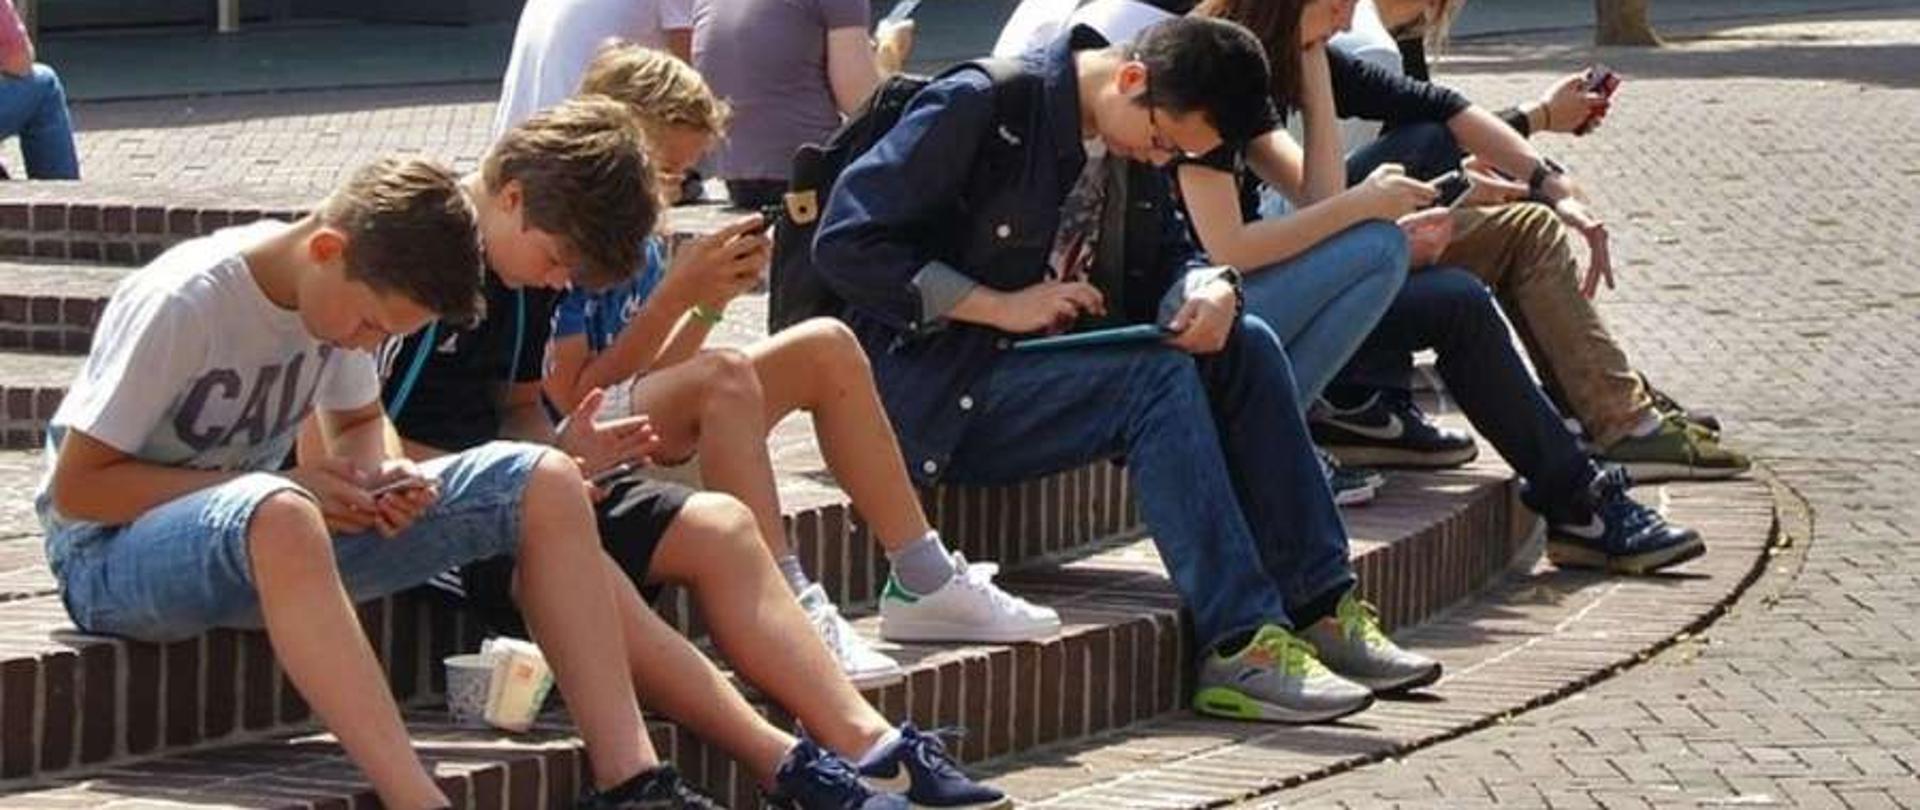 Grupa nastolatków przy smartfonach